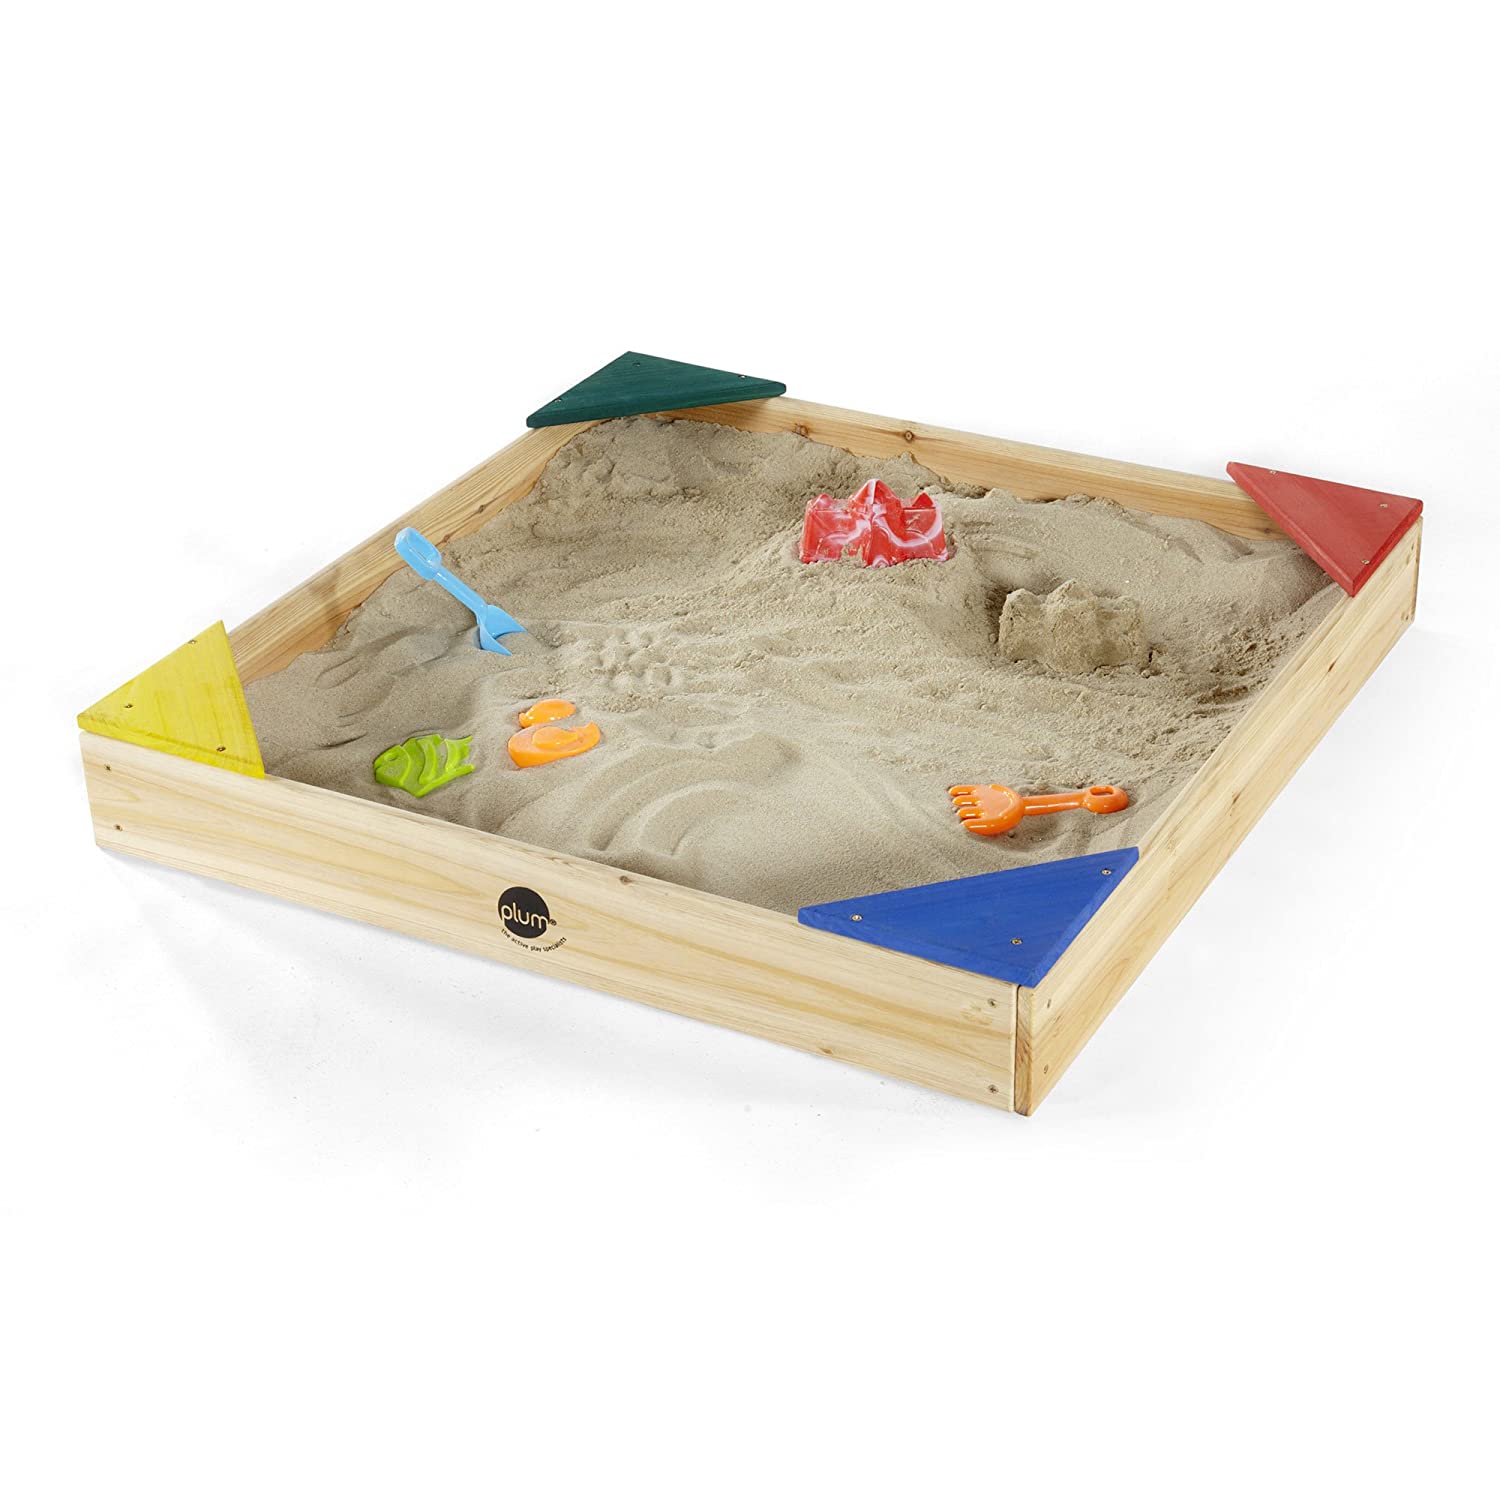 Plum Sand Box (Junior)